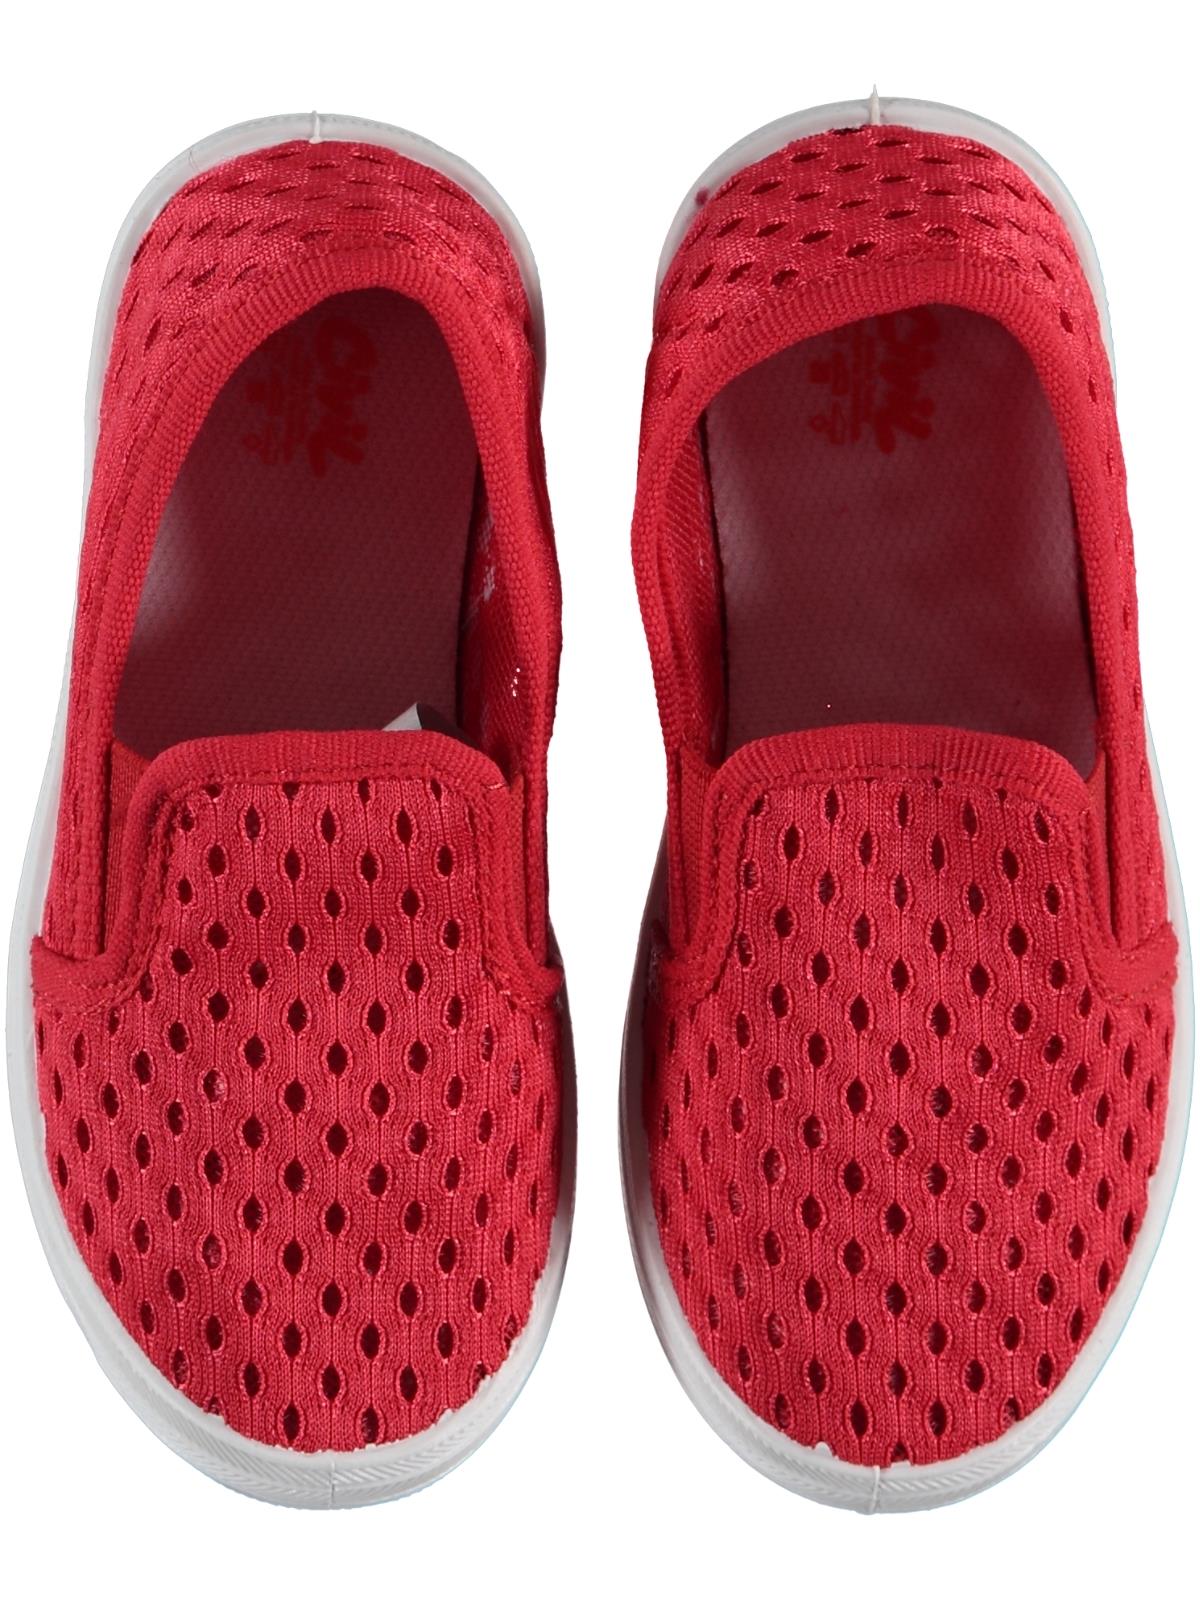 Civil Erkek Çocuk Keten Ayakkabı 26-30 Numara Kırmızı